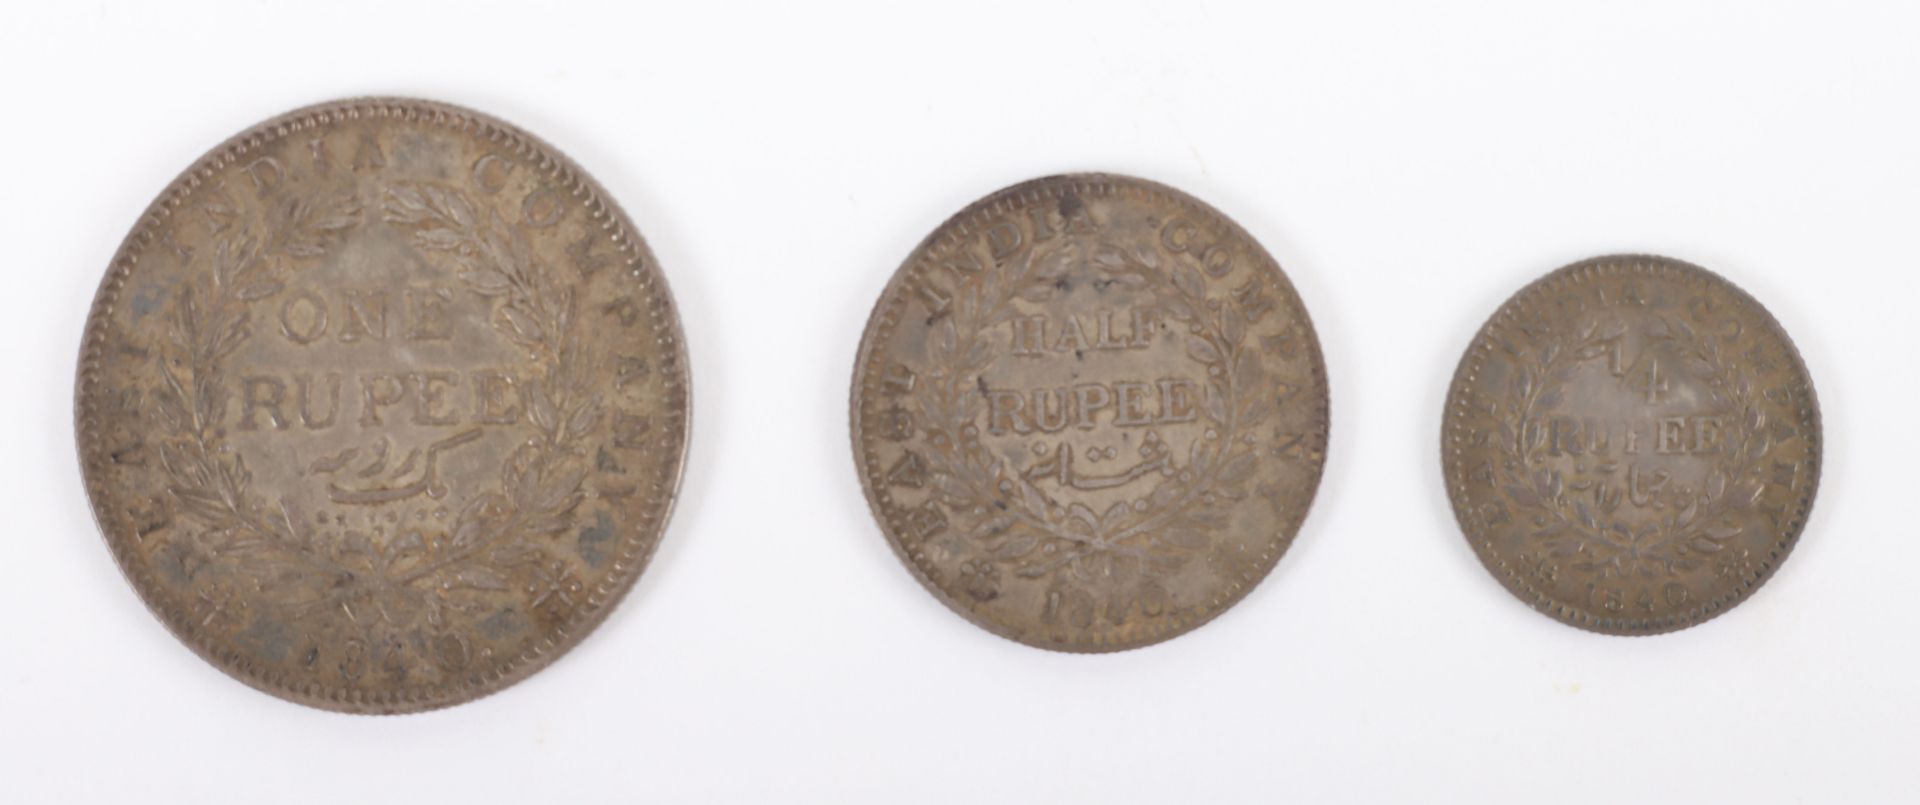 British India, Victoria (1837-1901), One Rupee, Half Rupee and Quarter Rupee, 1840, - Image 2 of 2